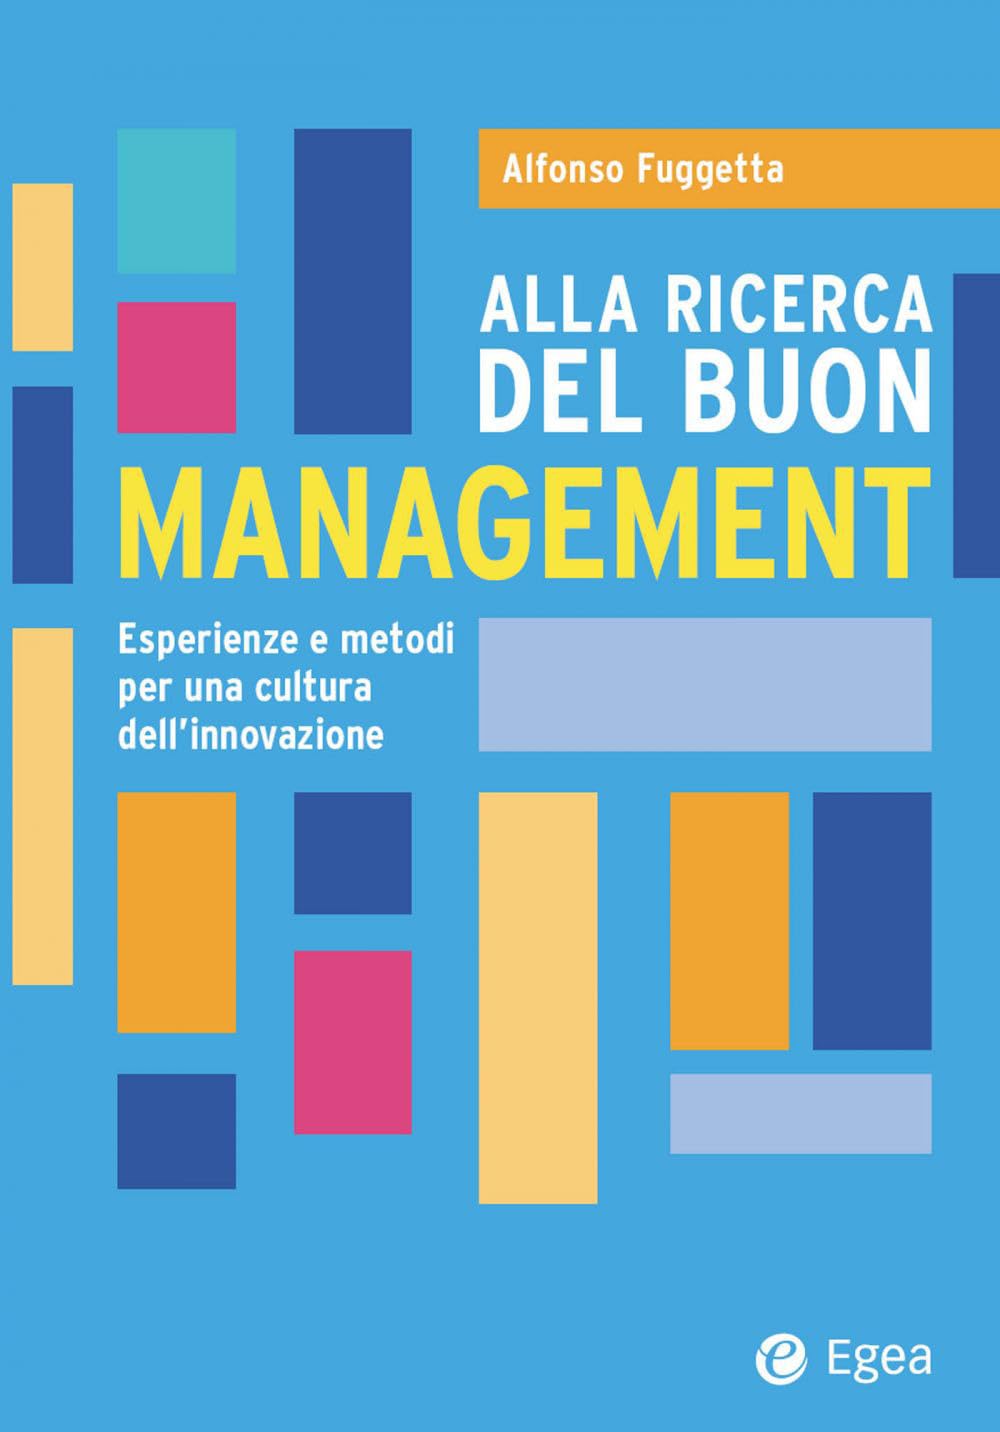 Alfonso Fuggetta: Alla ricerca del buon management (Paperback, Italiano language, EGEA)